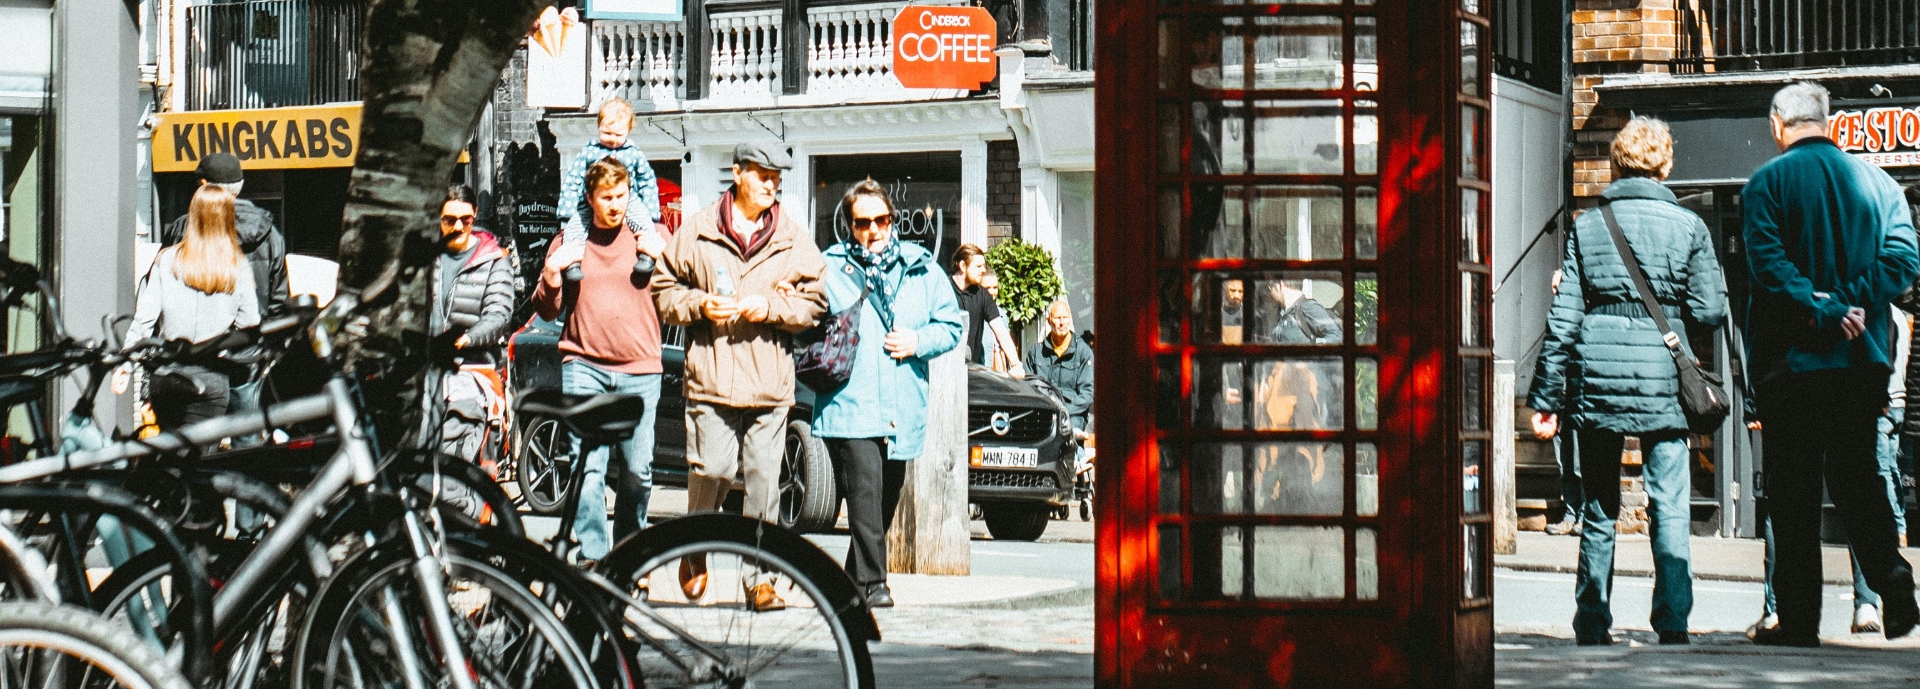 people in street outside shops